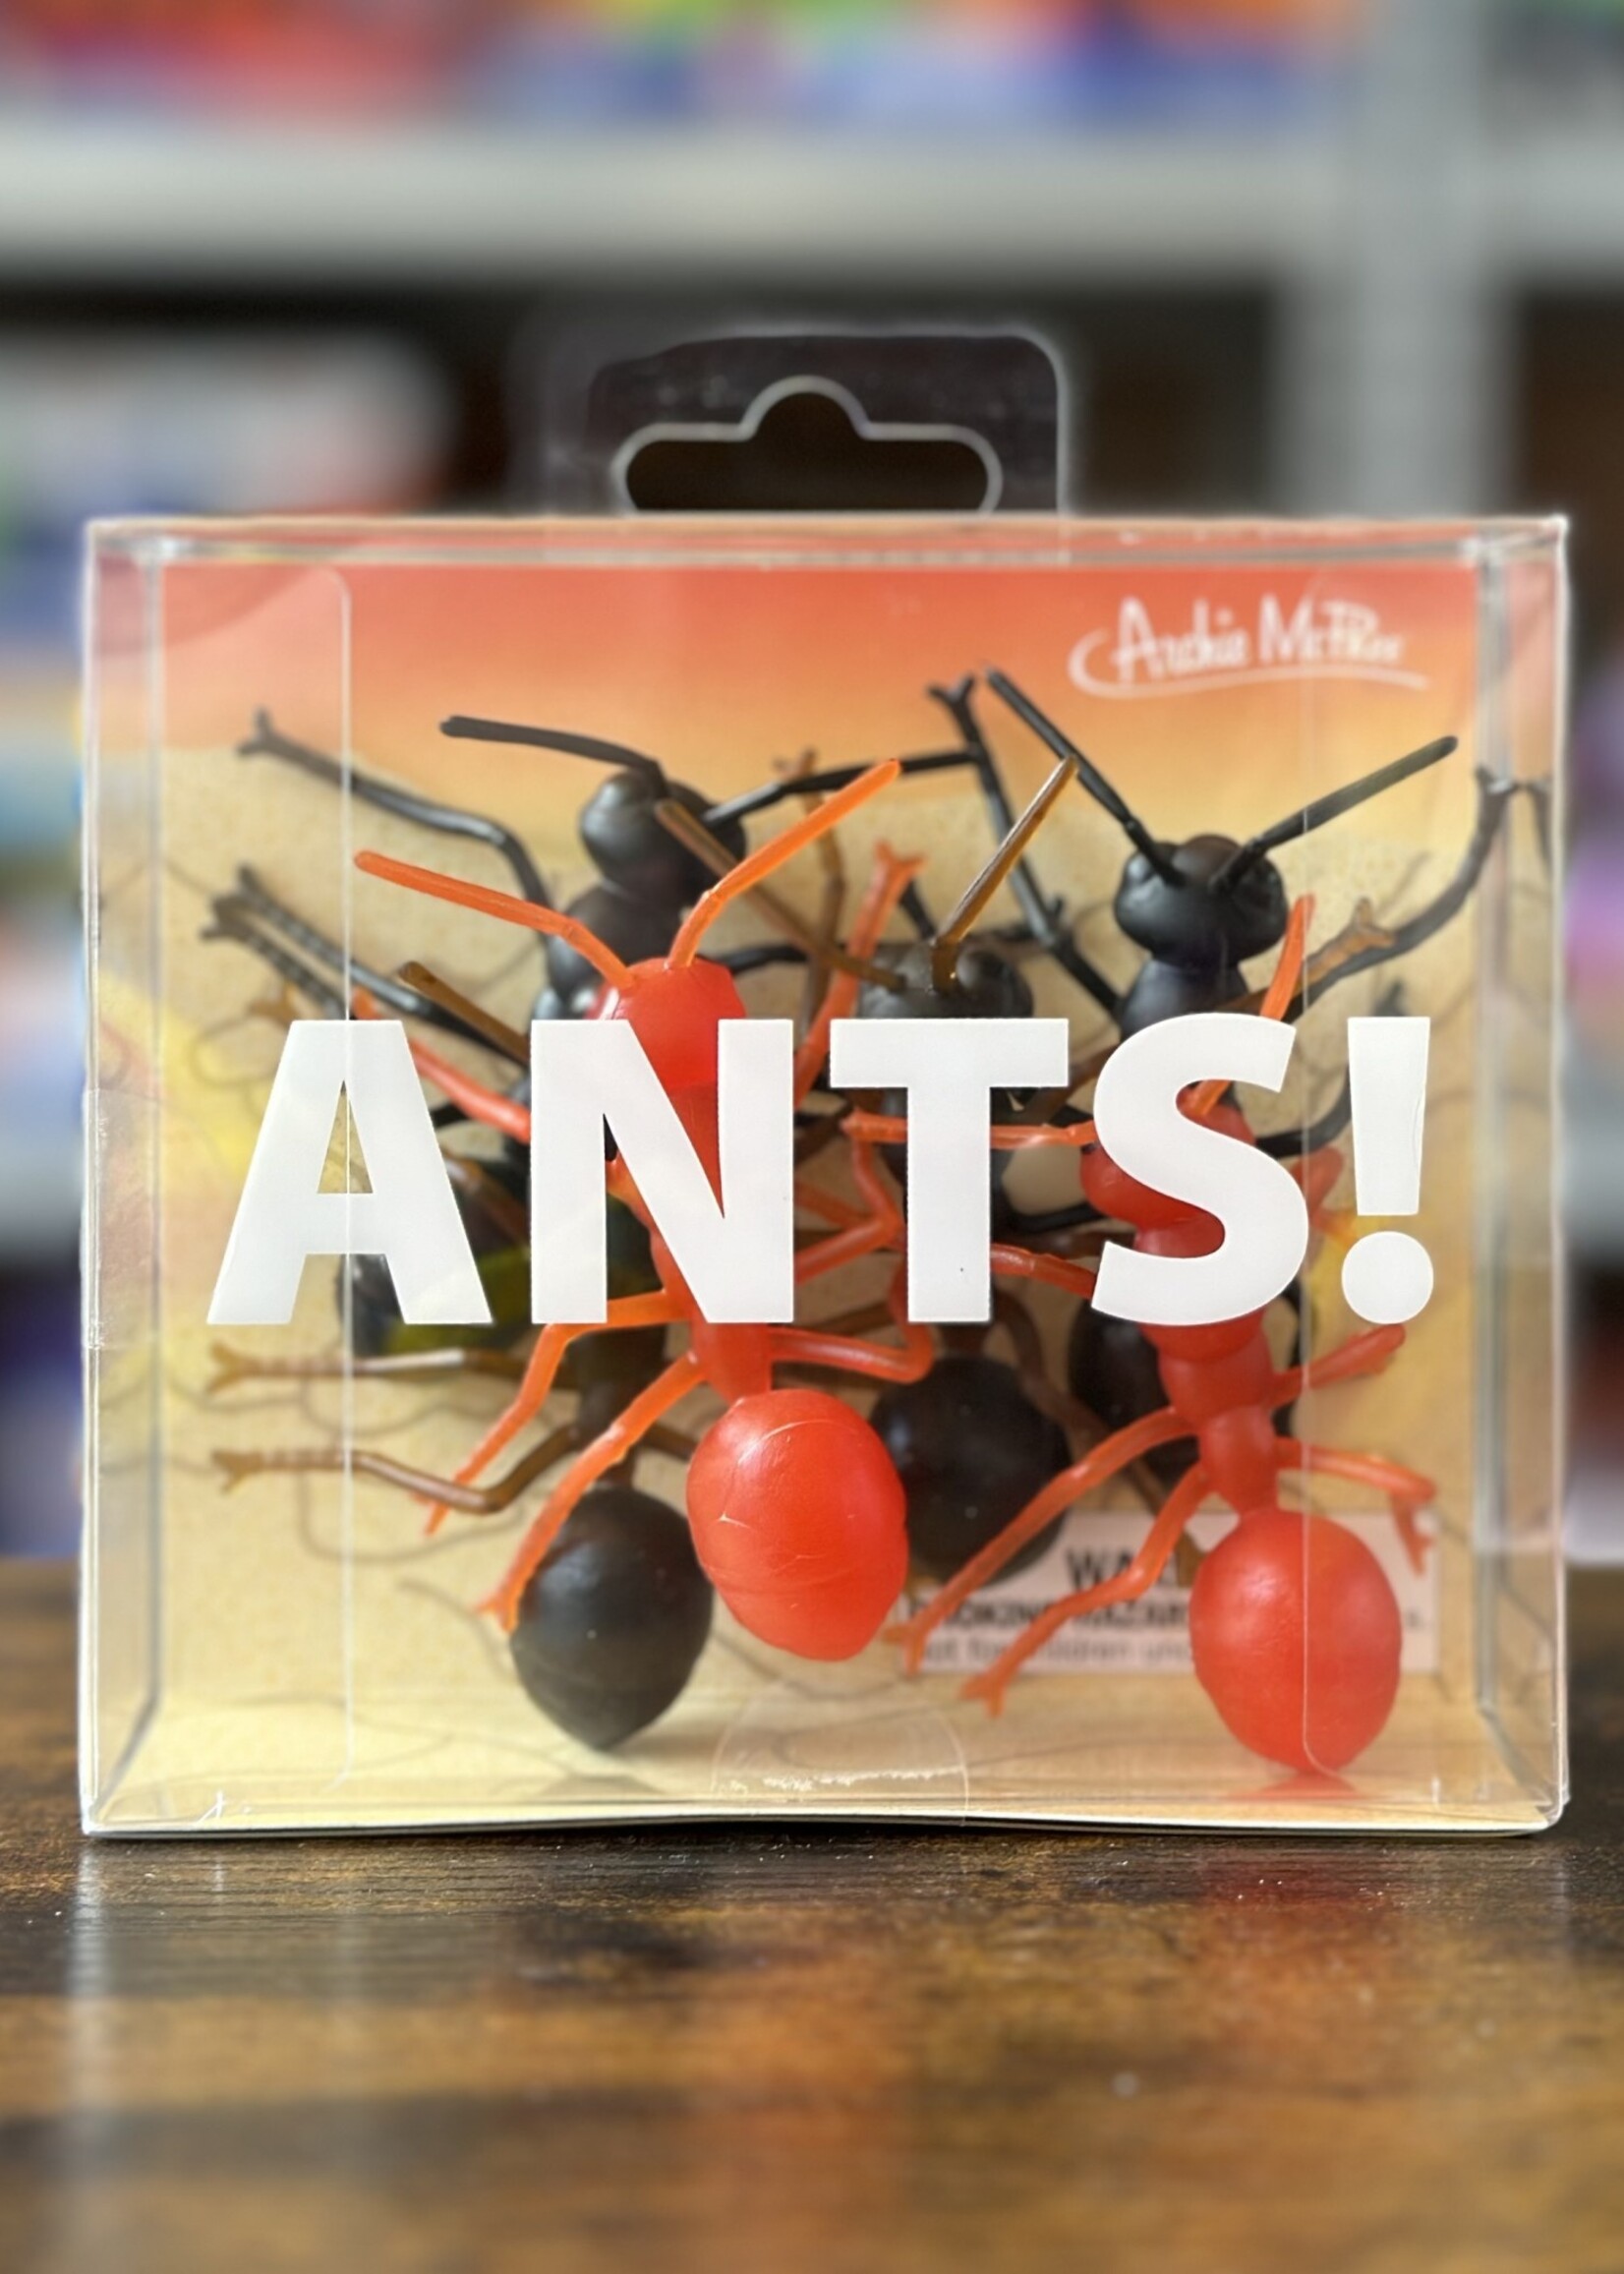 Archie McPhee Ants!